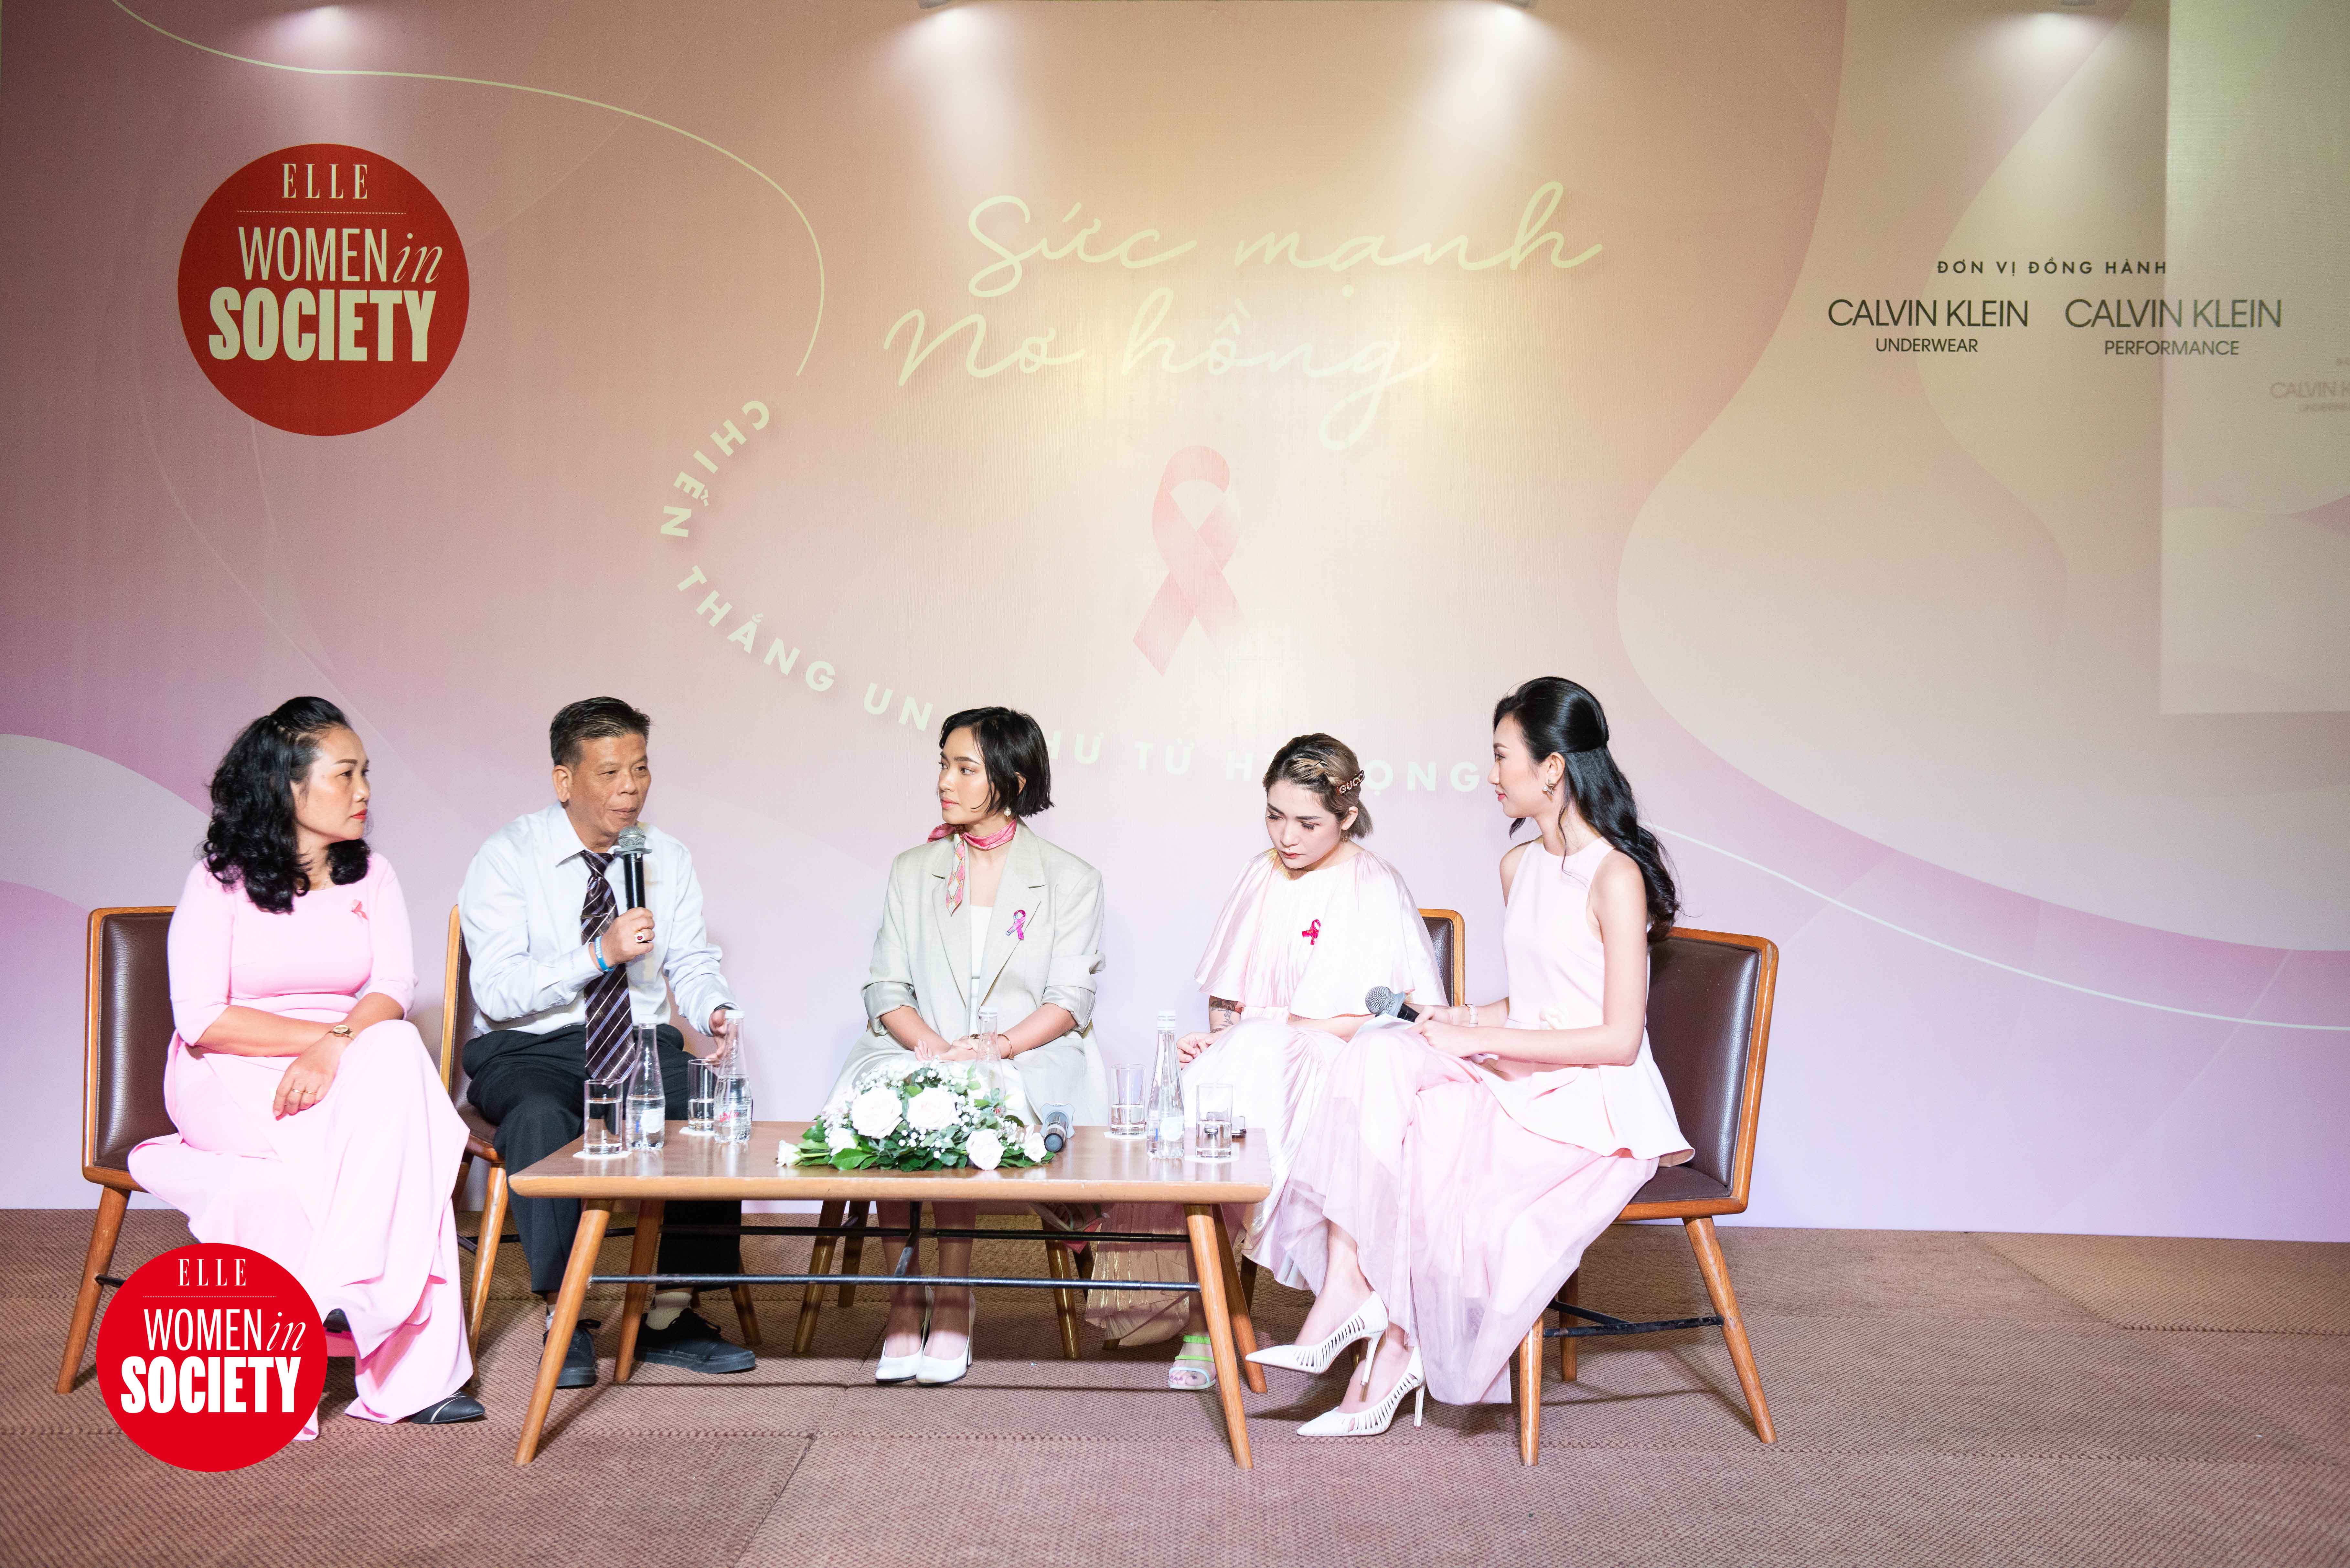 ung thư vú bác sĩ Trần Nguyên Hà trên sân khấu 5 người elle women in society